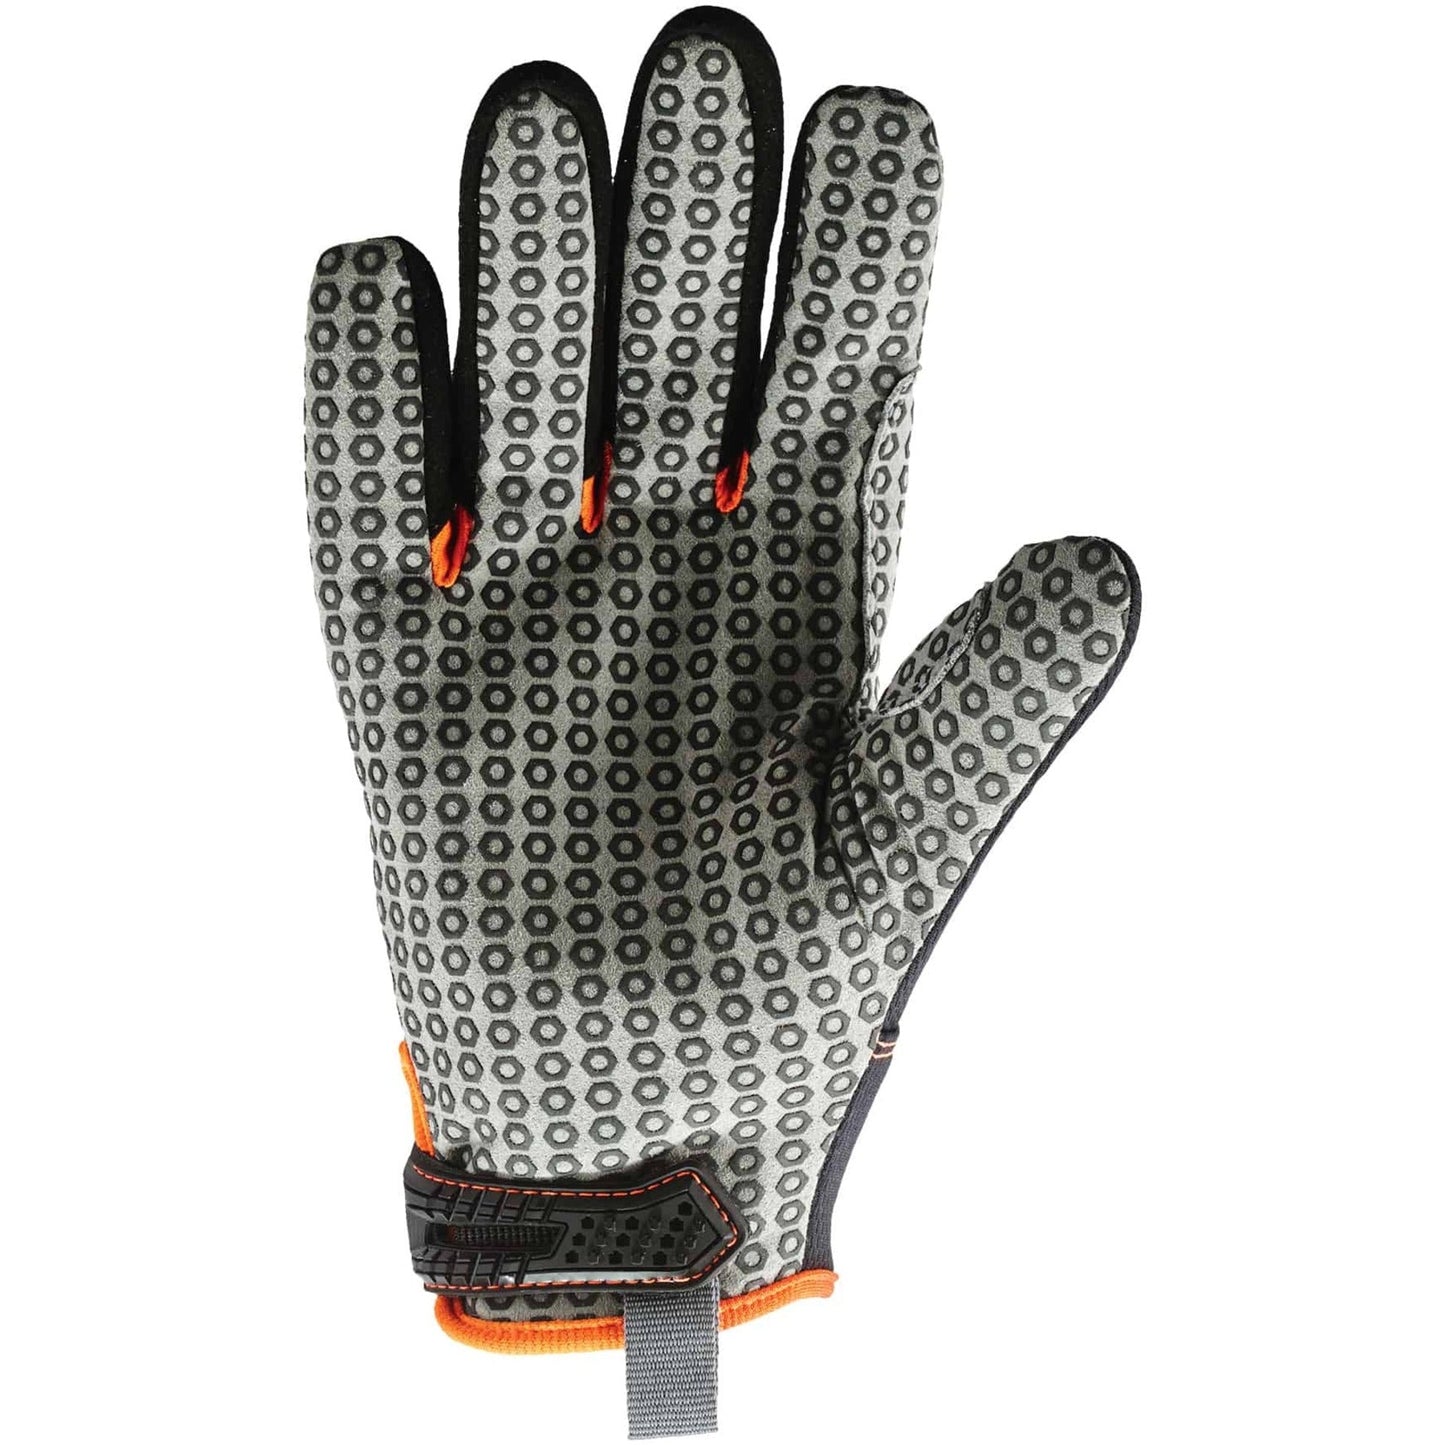 Ergodyne ProFlex 821 Smooth Surface Handling Gloves